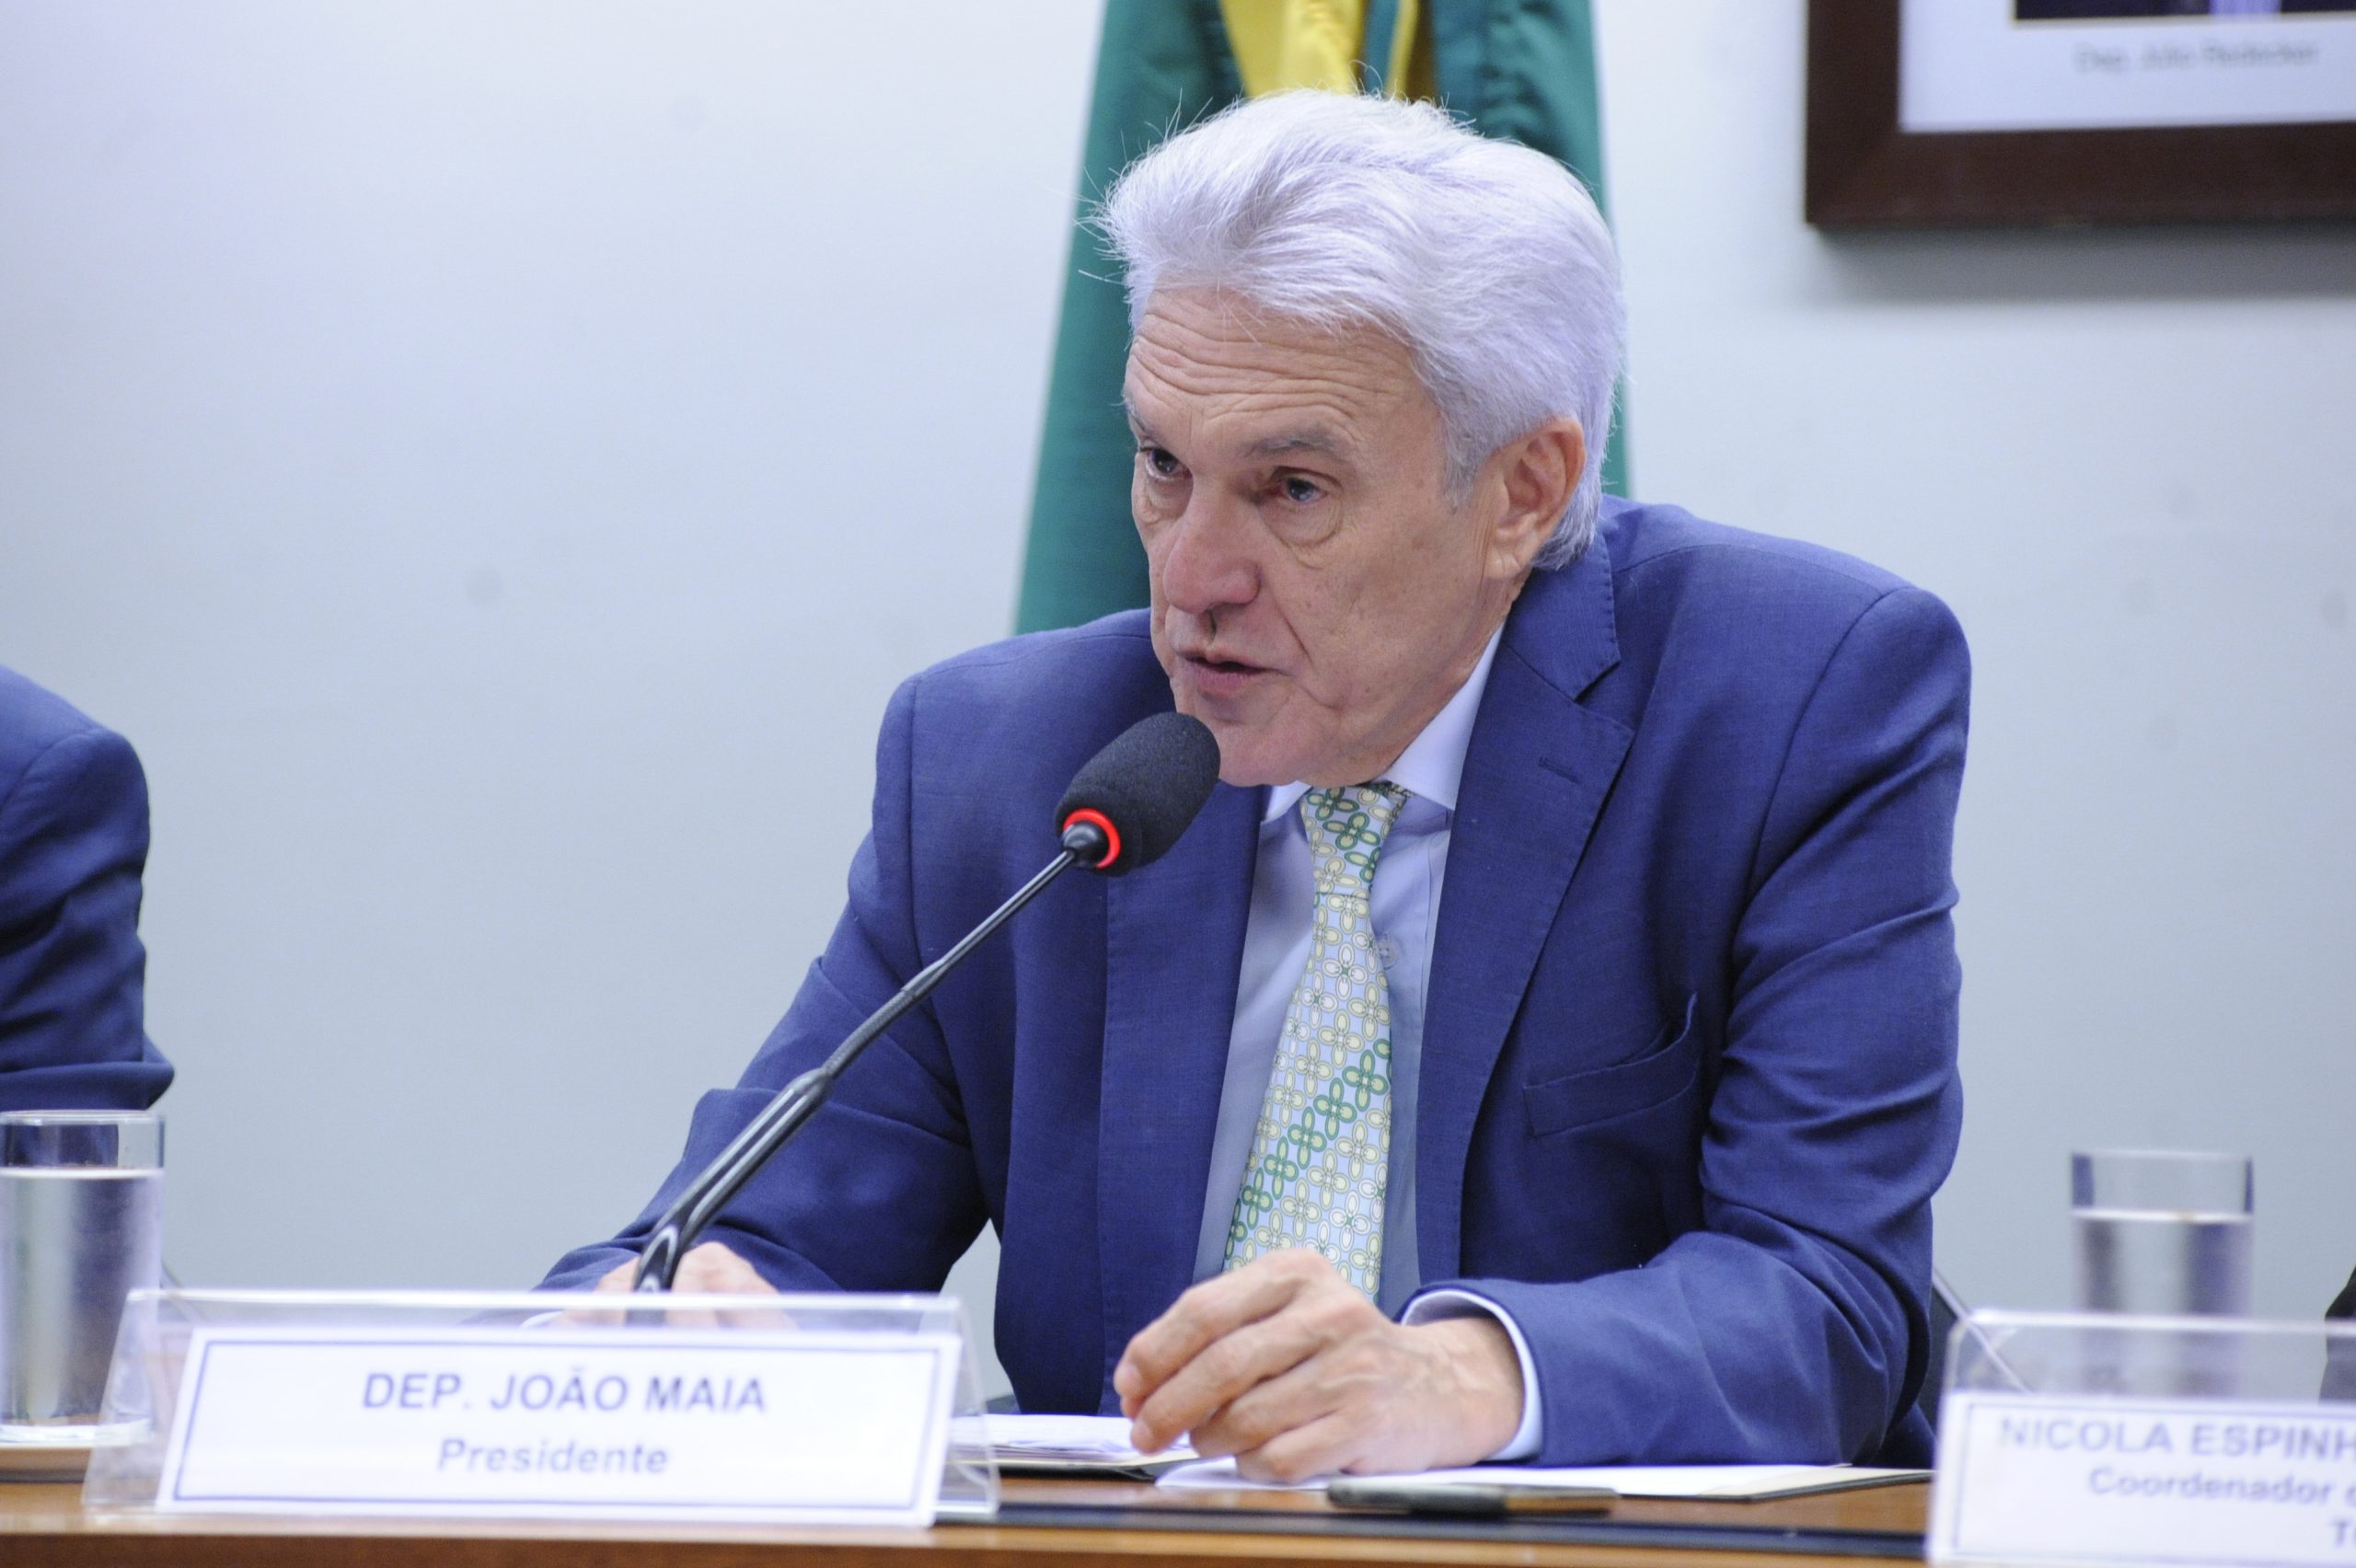 João Maia